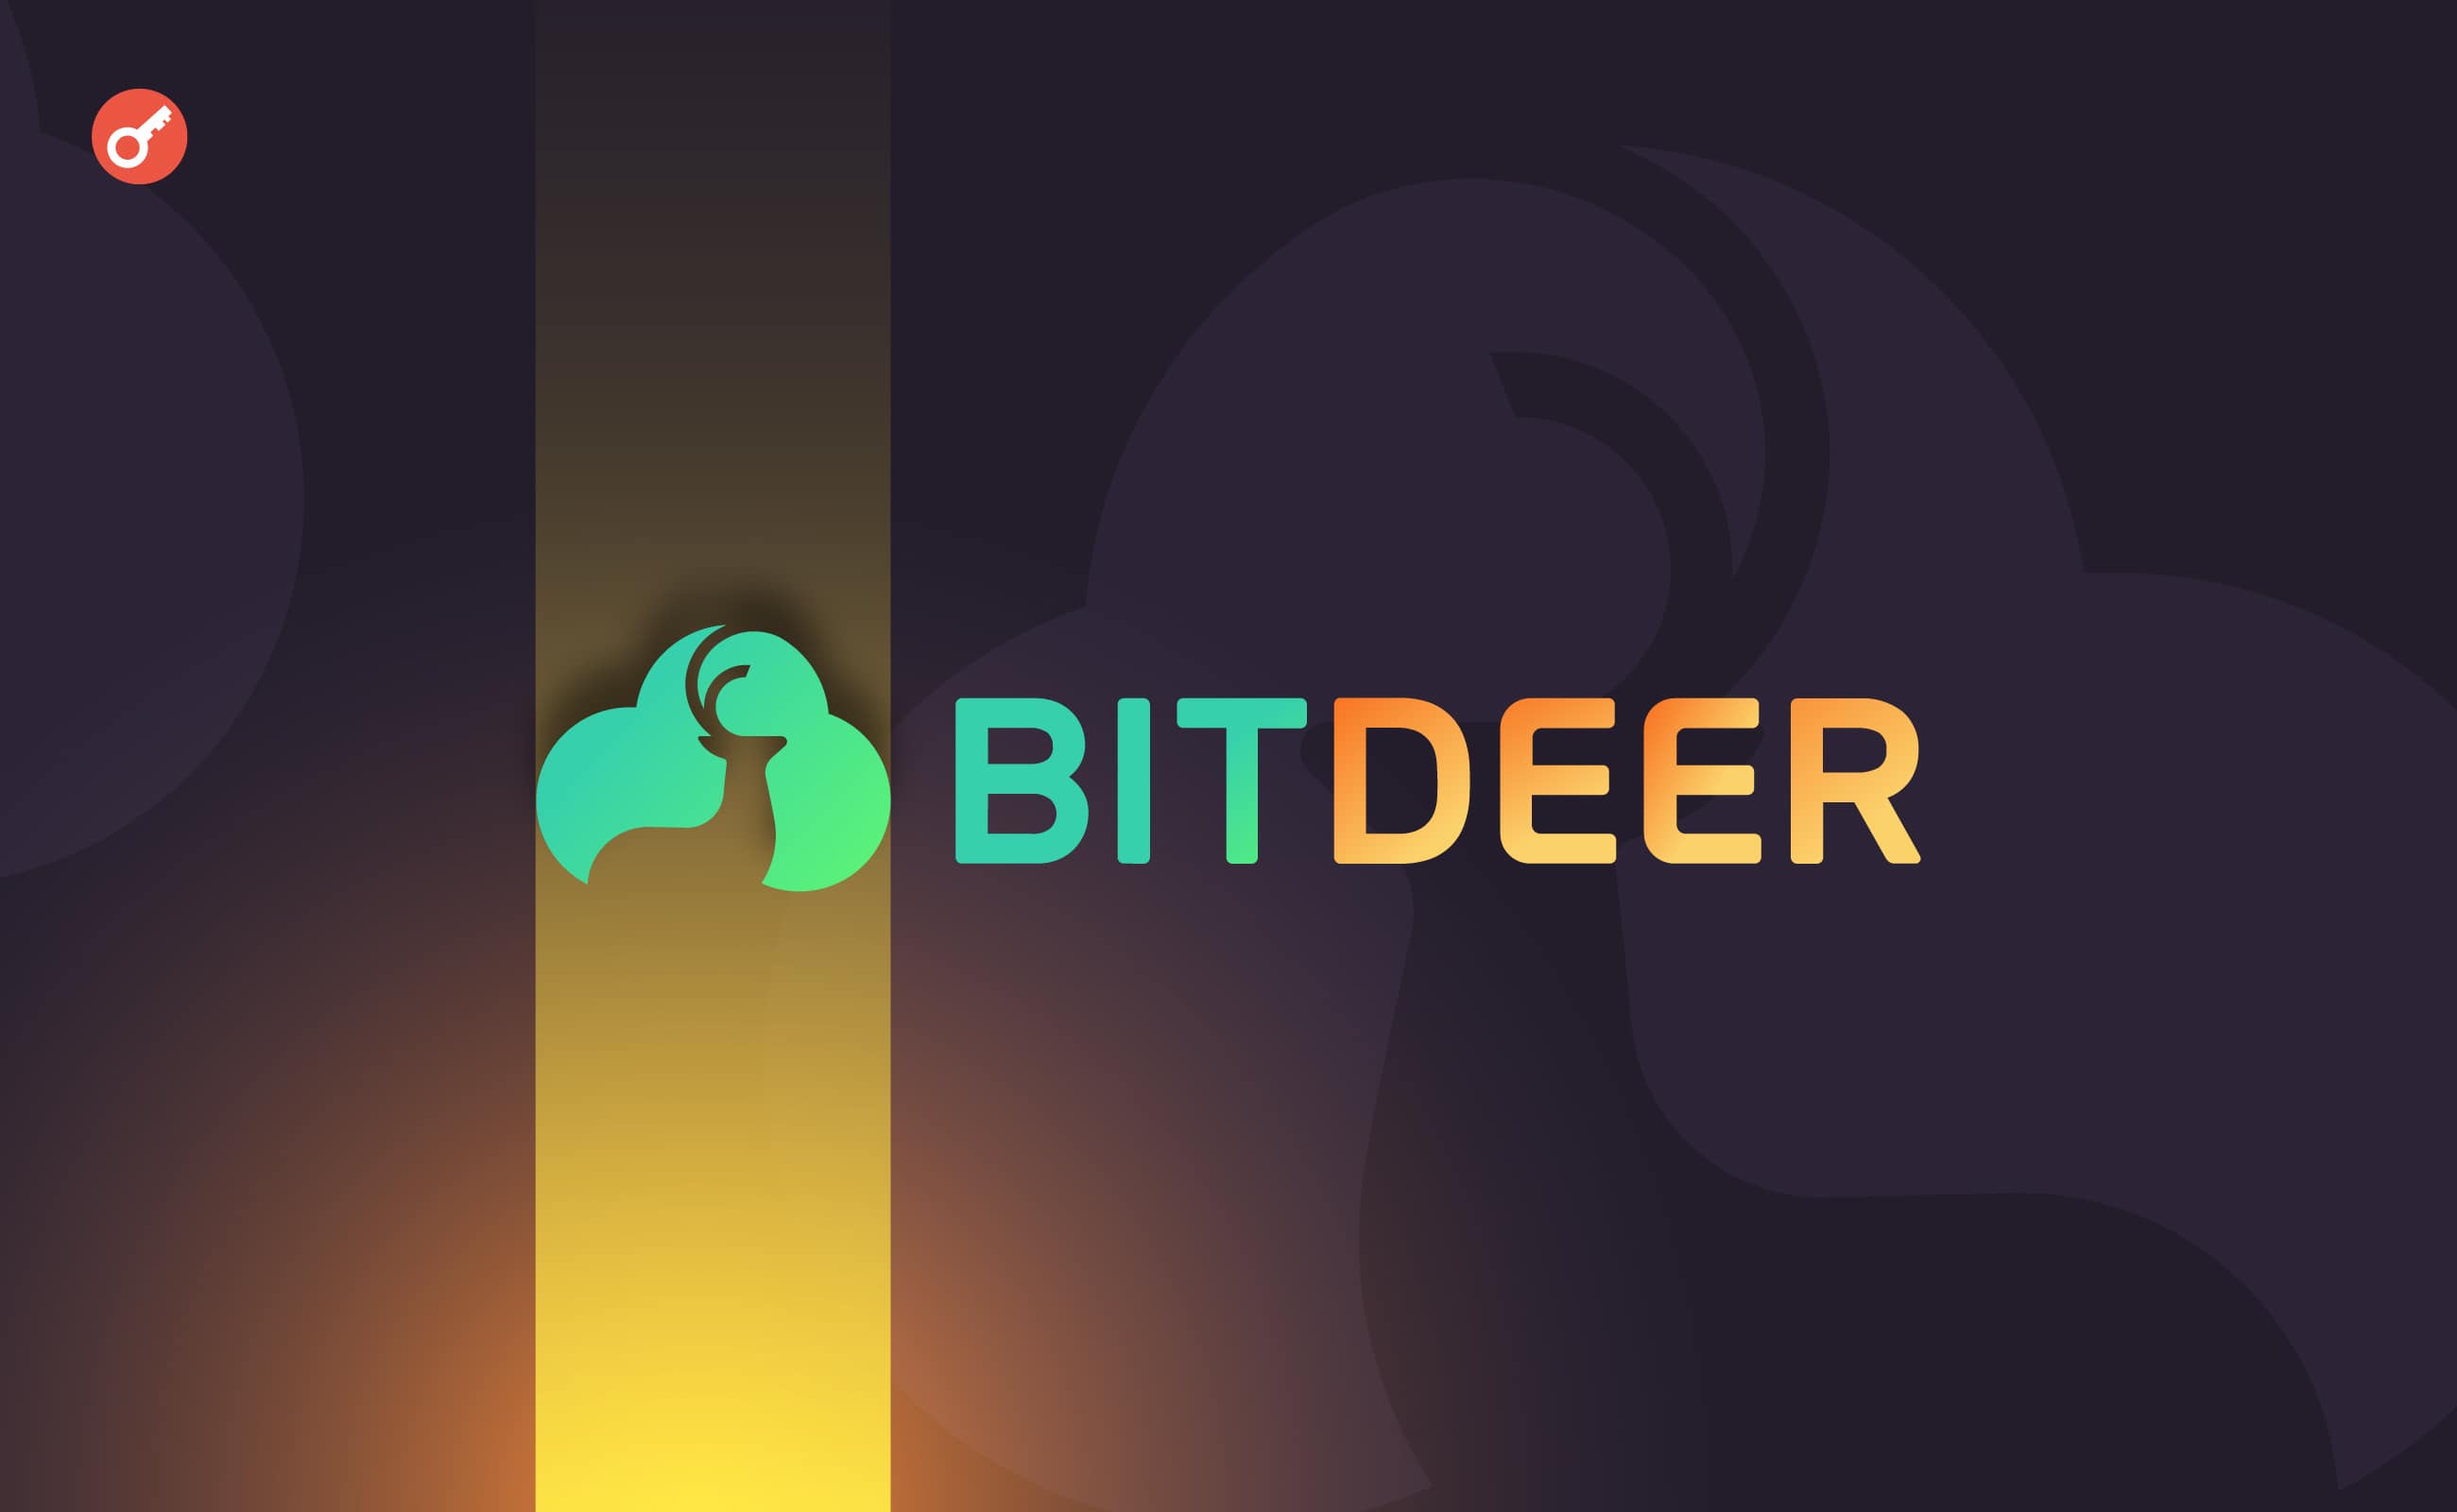 Tether інвестувала $150 млн у біткоїн-майнера Bitdeer. Головний колаж новини.